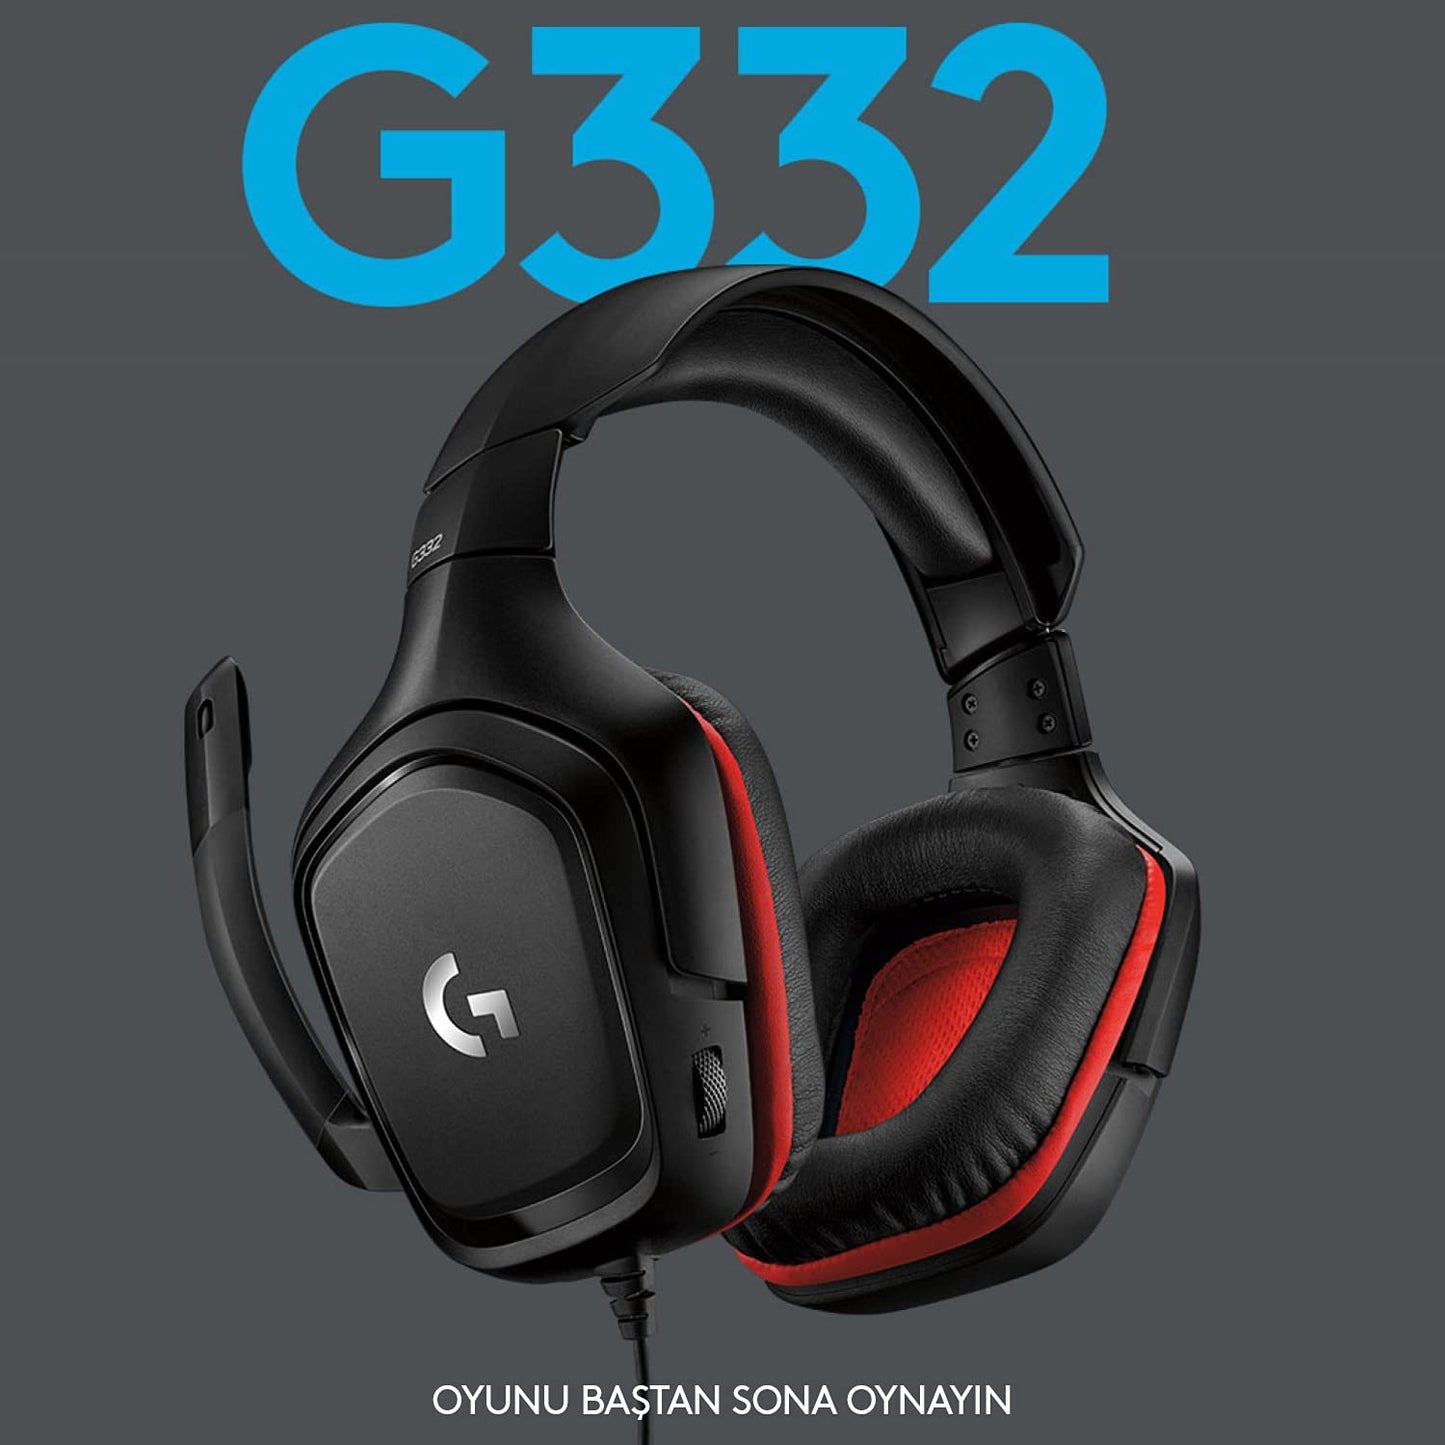 Logitech G G332 Kablolu Kulak Üstü Oyuncu Kulaklığı, 50 mm Ses Sürücüleri, 6 mm Katanarak Sessize Alınan Mikrofon, 2 m Kablo Uzunluğu, Siyah